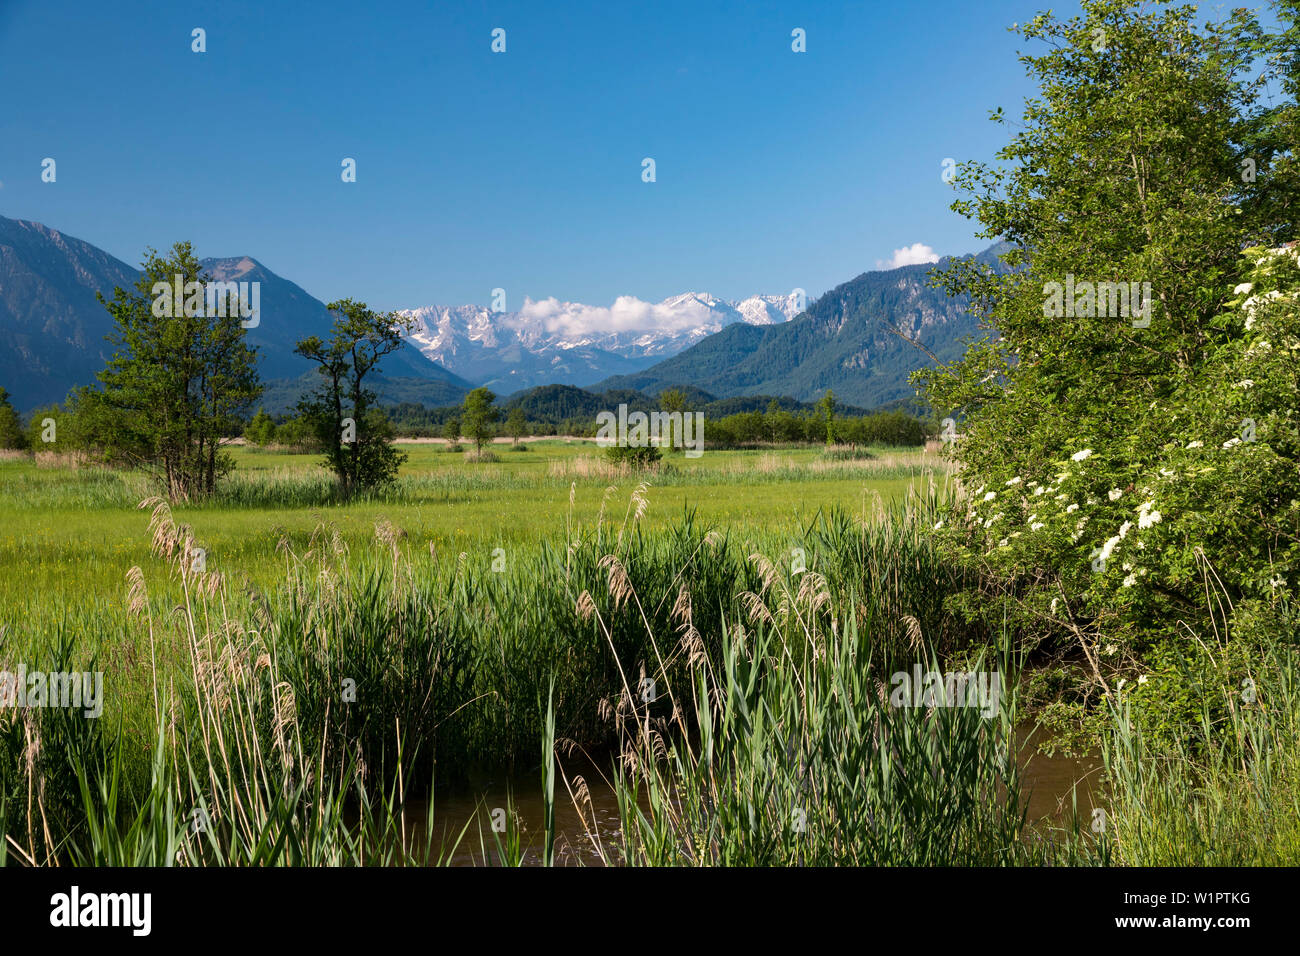 Moor, Murnau, Ramsach river, Wetterstein mountains, Alps, Landkreis Garmisch-Partenkirchen, Upper Bavaria, Germany, Europe Stock Photo